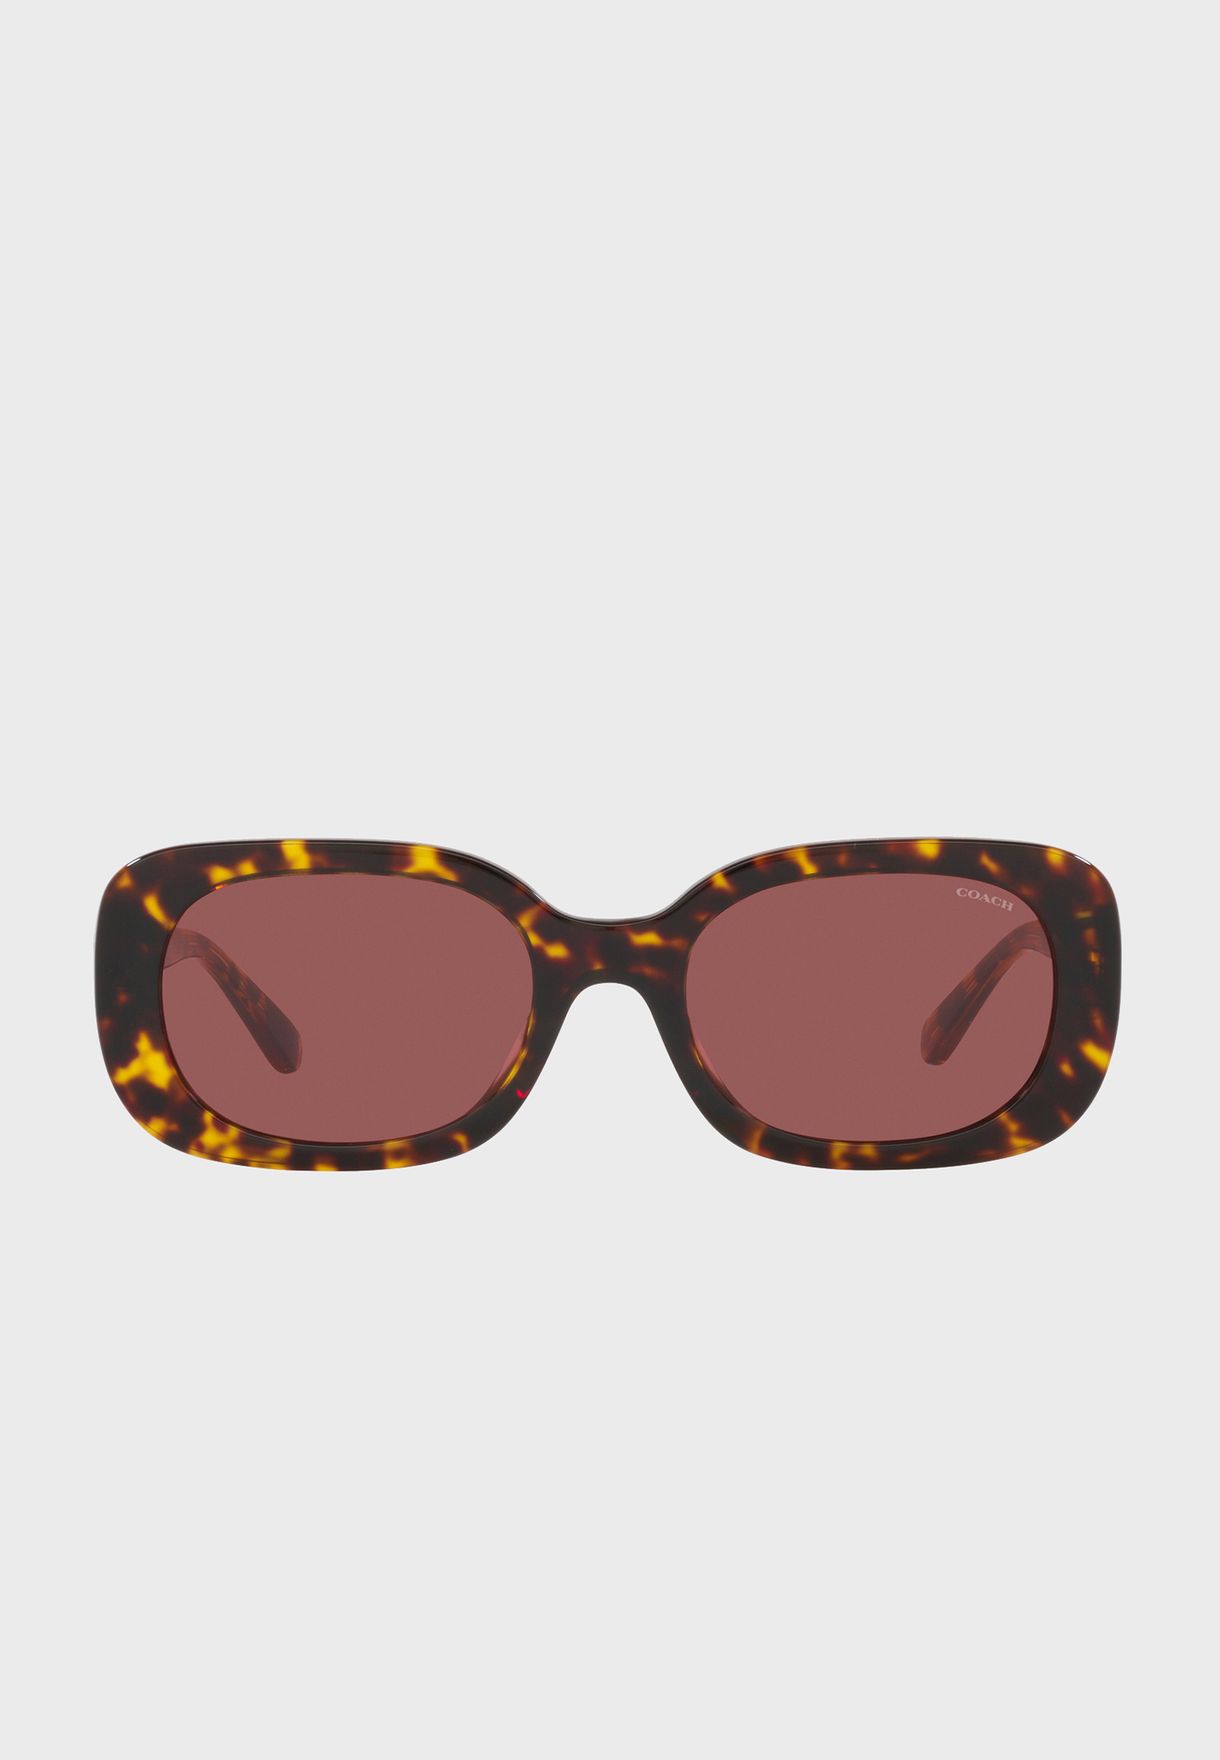 0Hc8358U Wayfarer Sunglasses